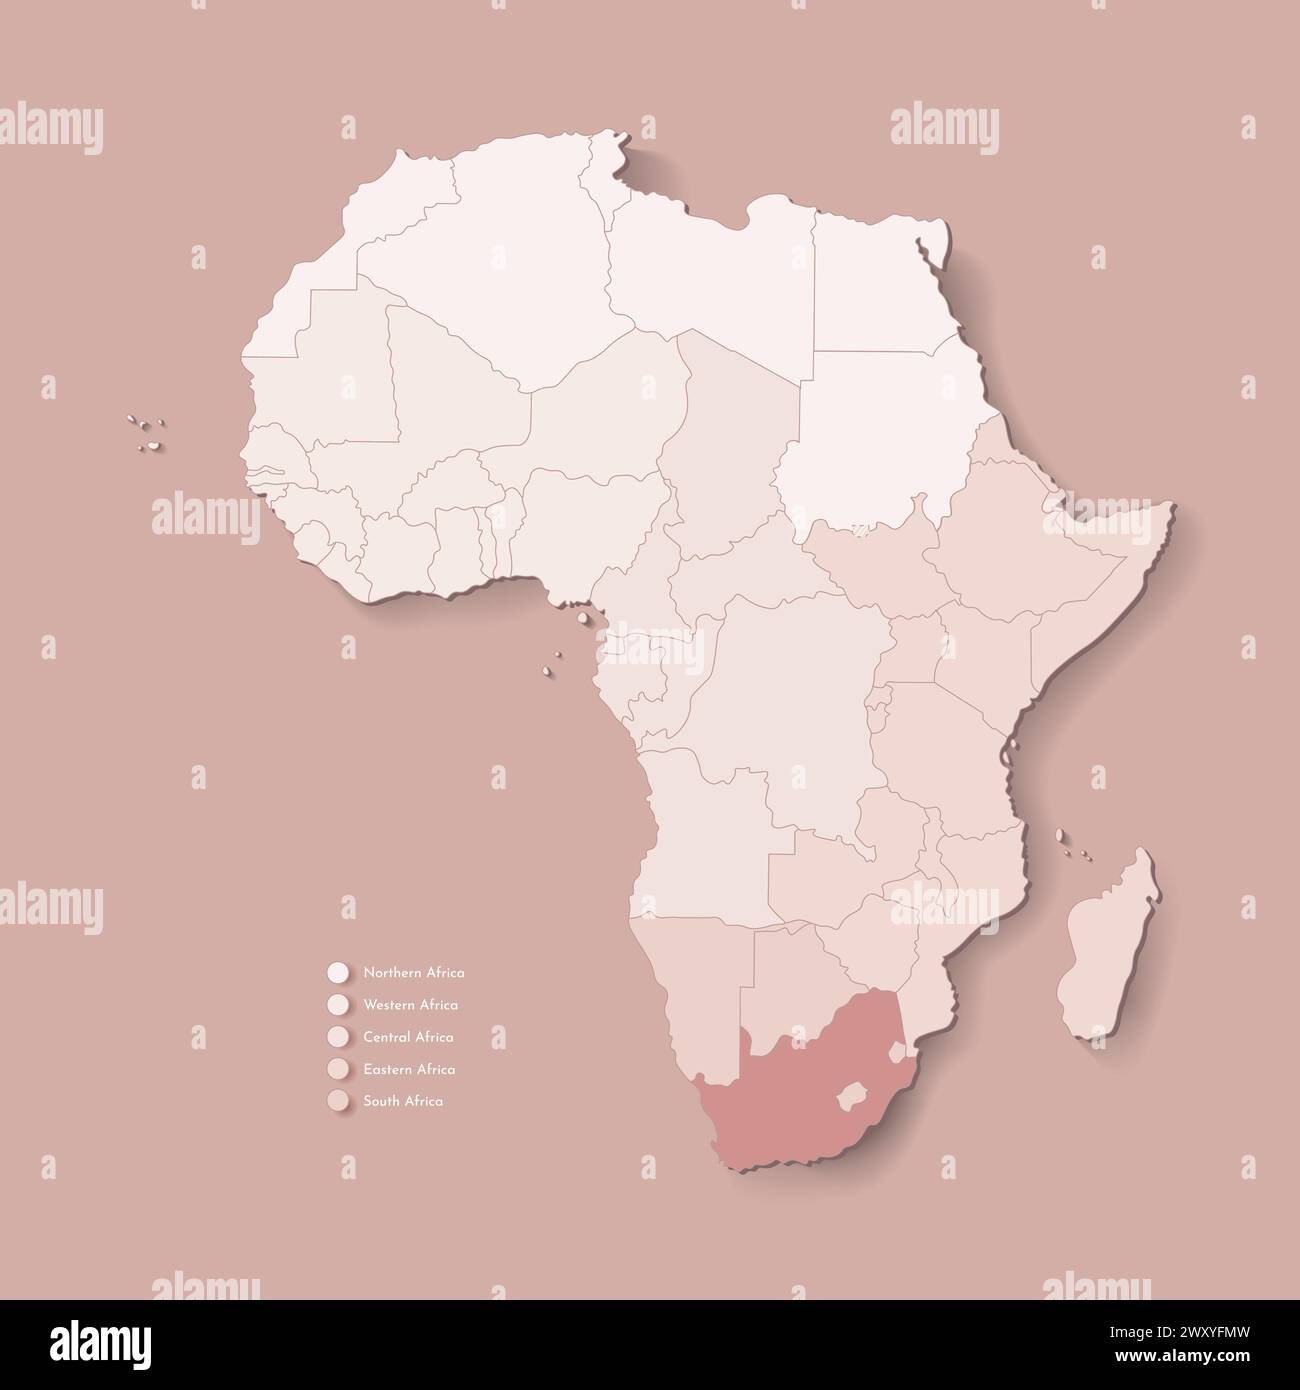 Vektor-Illustration mit afrikanischem Kontinent mit Grenzen aller staaten und markiertem Land Südafrika. Politische Karte in braunen Farben mit Western, Sou Stock Vektor